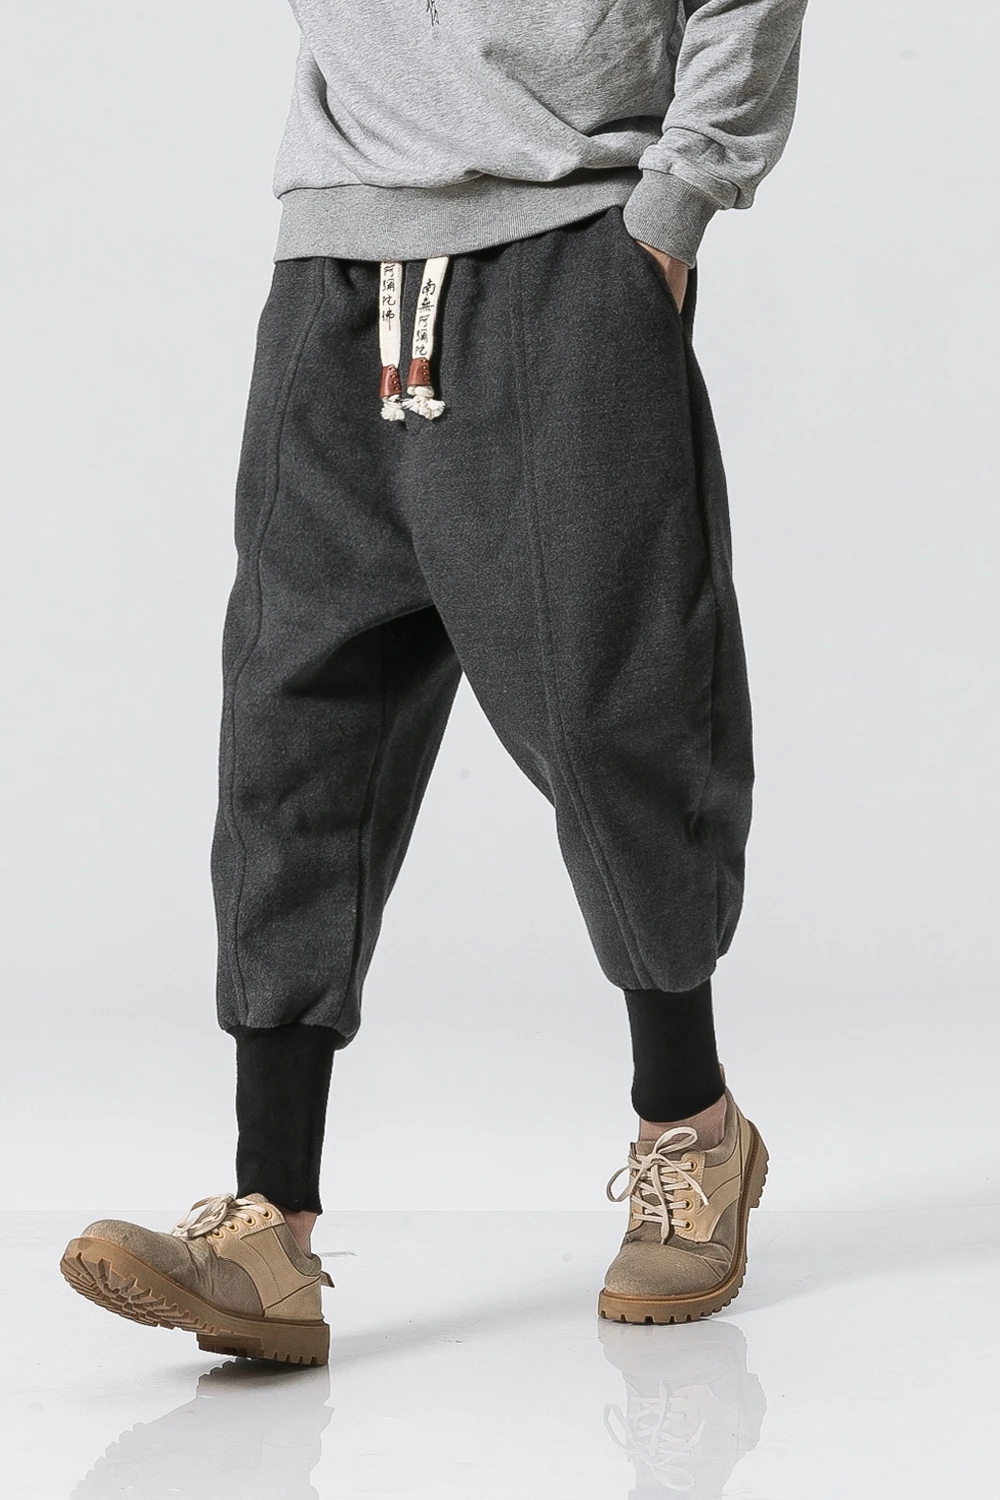 Зимние теплые штаны мужские шаровары для бега мужские спортивные штаны Pantalon Hombre Man хип-хоп спортивные штаны длиной до щиколотки 5XL